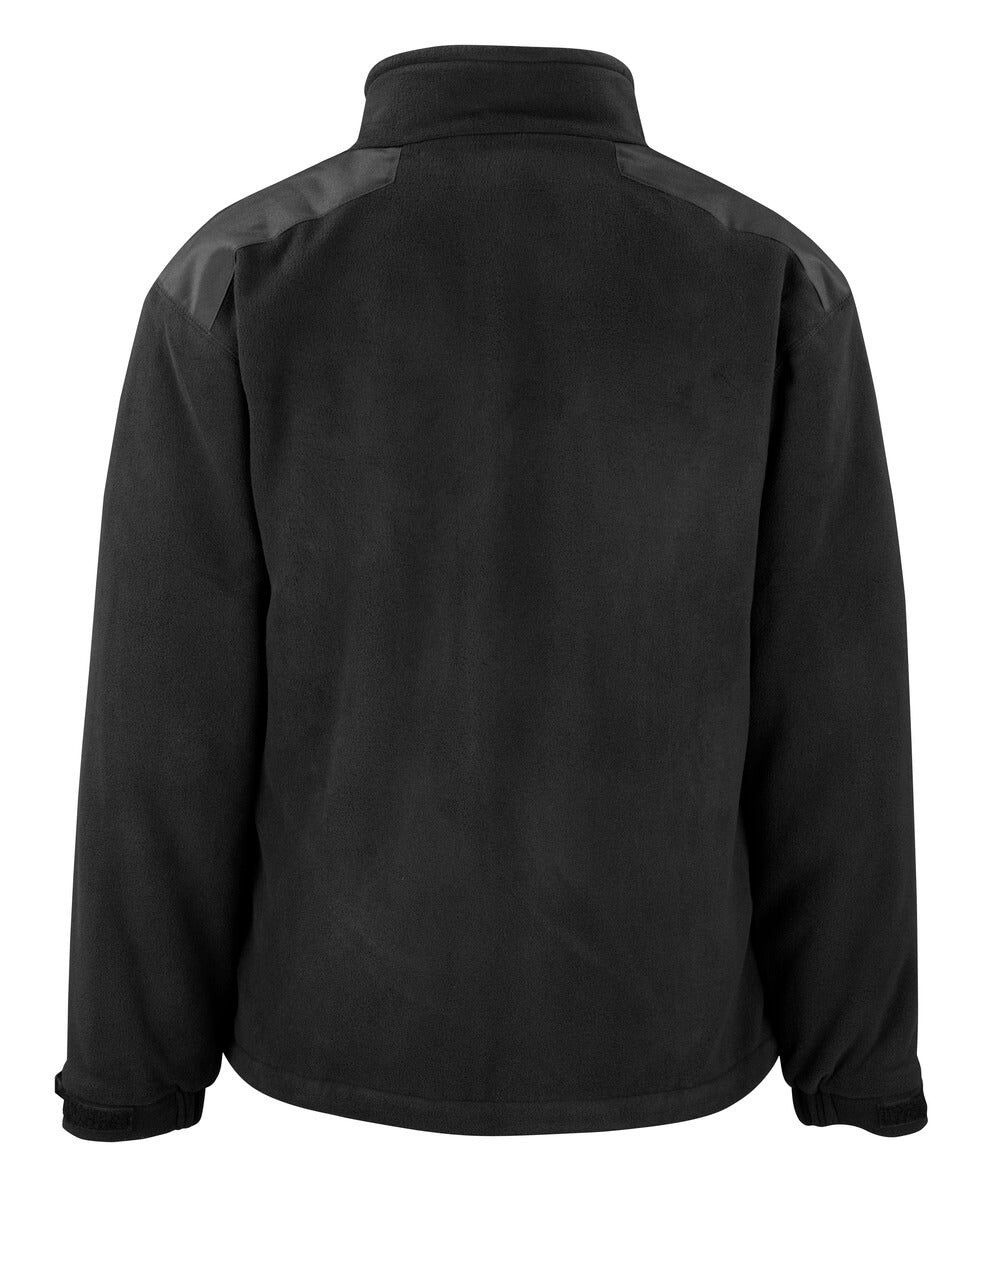 MACMICHAEL® WORKWEAR Bogota Fleece Jacket 06542 black